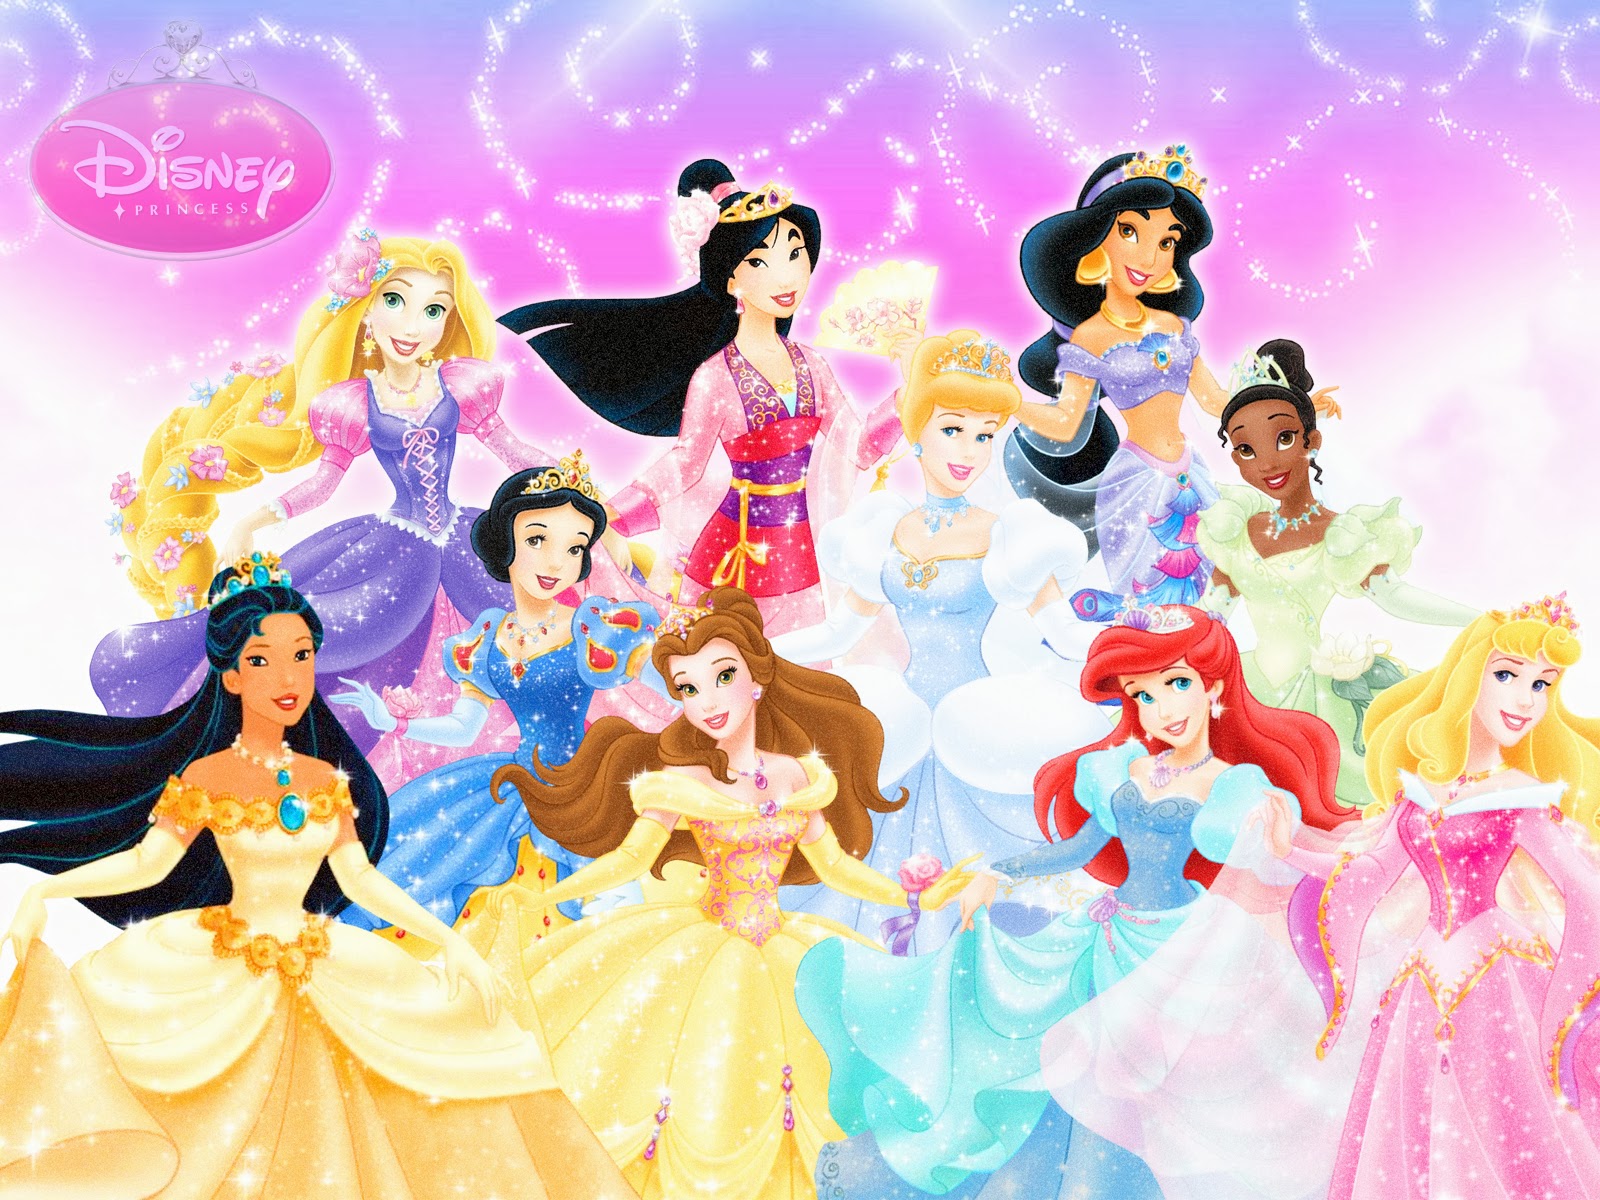 [48+] Disney Princess Wallpaper HD | WallpaperSafari.com